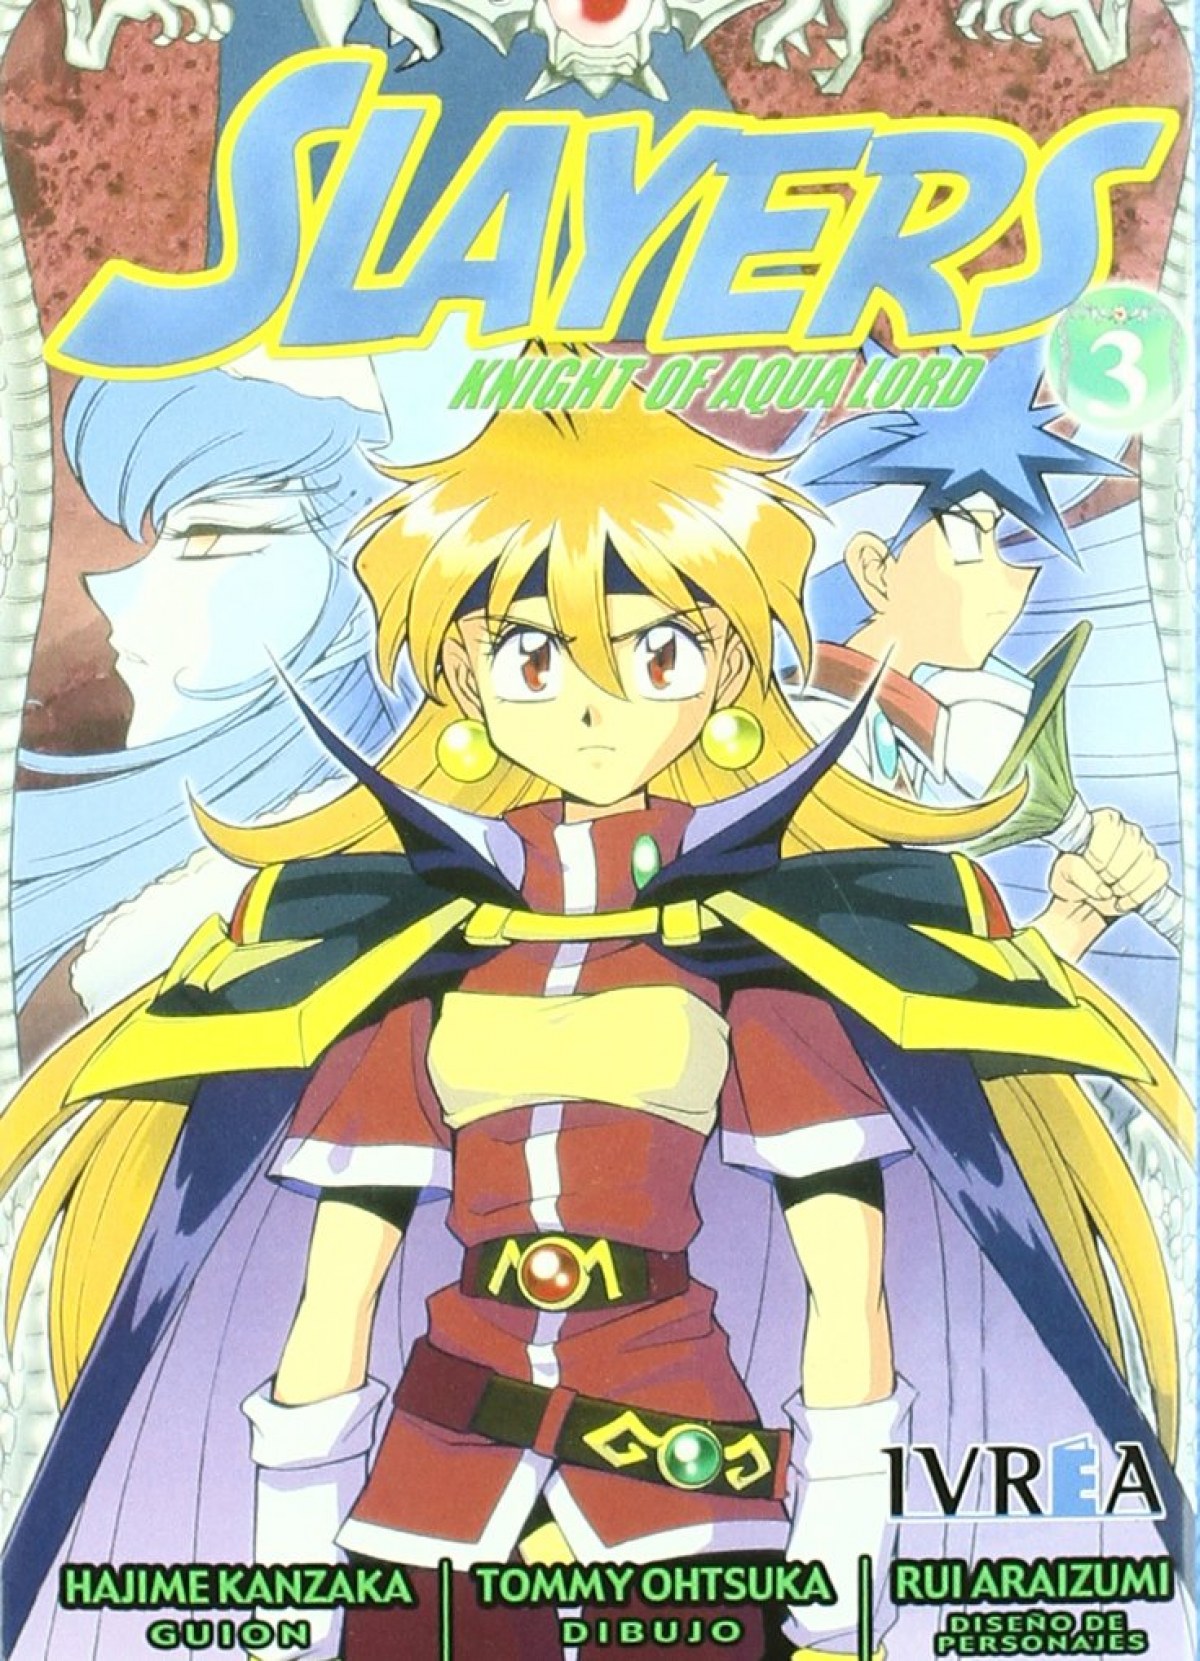 Slayers Knight Aqua, 3 - Kanzaka, Hajime